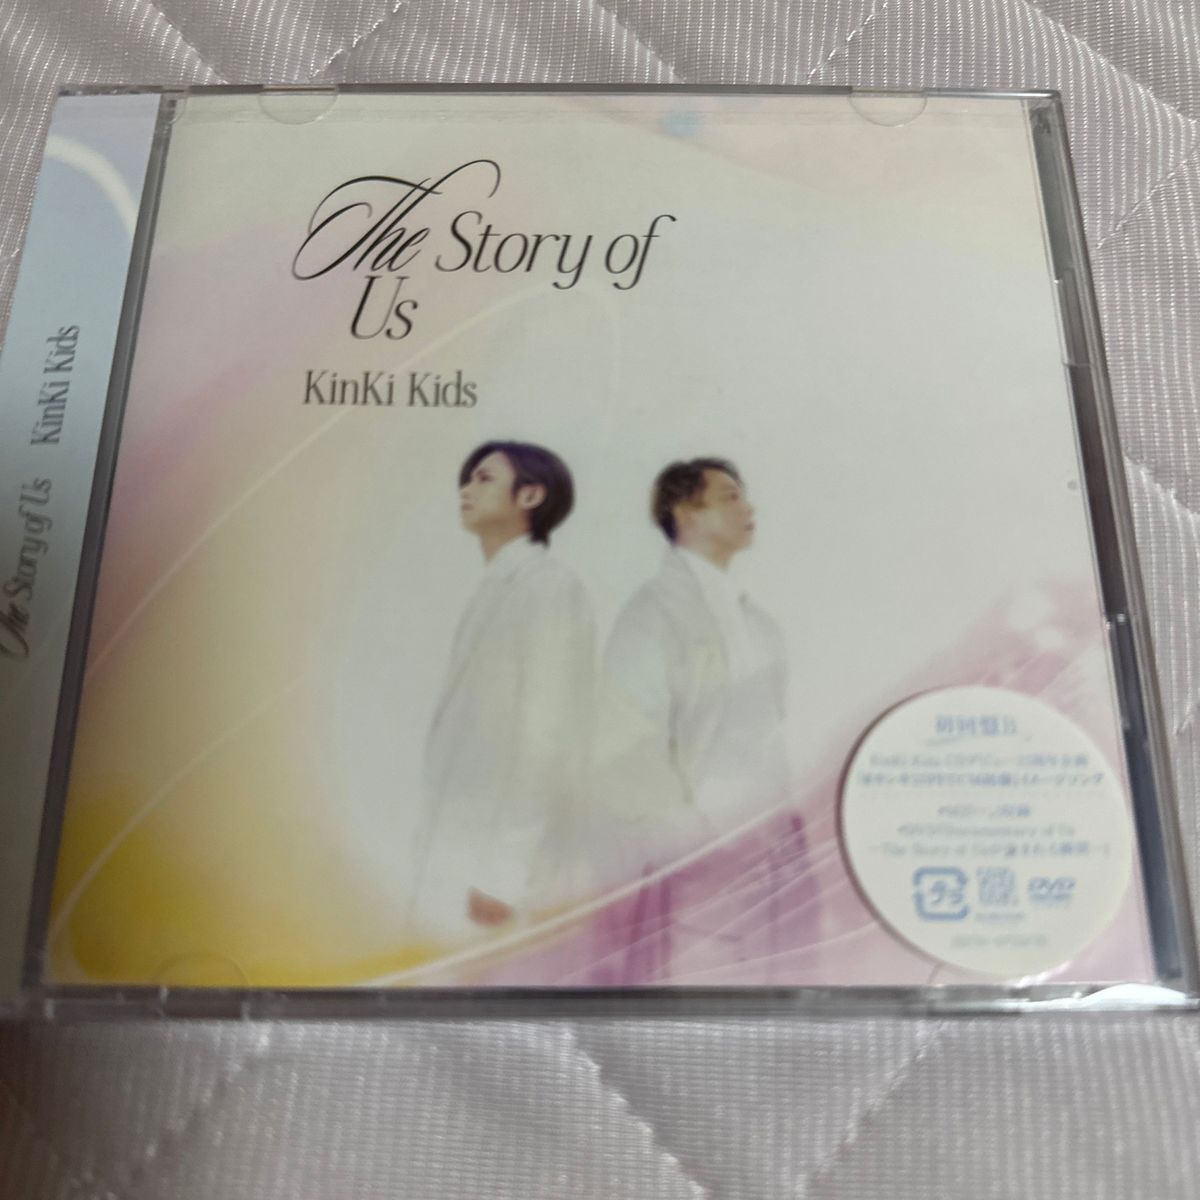 初回盤B DVD付 3面6Pジャケット KinKi Kids CD+DVD/The Story of Us 